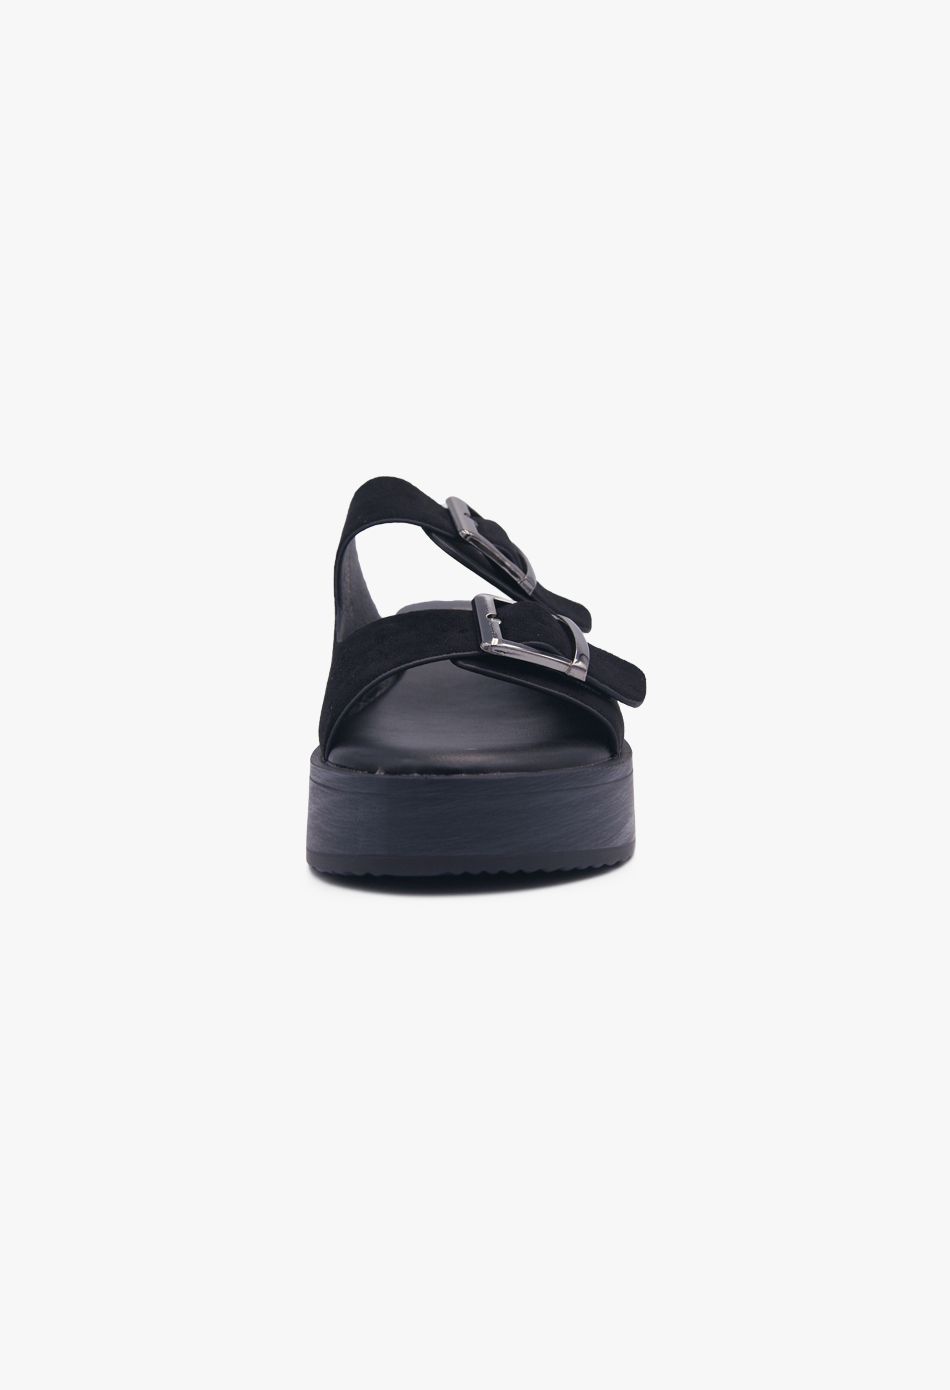 Πλατφόρμες Suede με Δύο Τόκες & Τρουκς Μαύρο / F1512-black Ανοιχτά Παπούτσια joya.gr